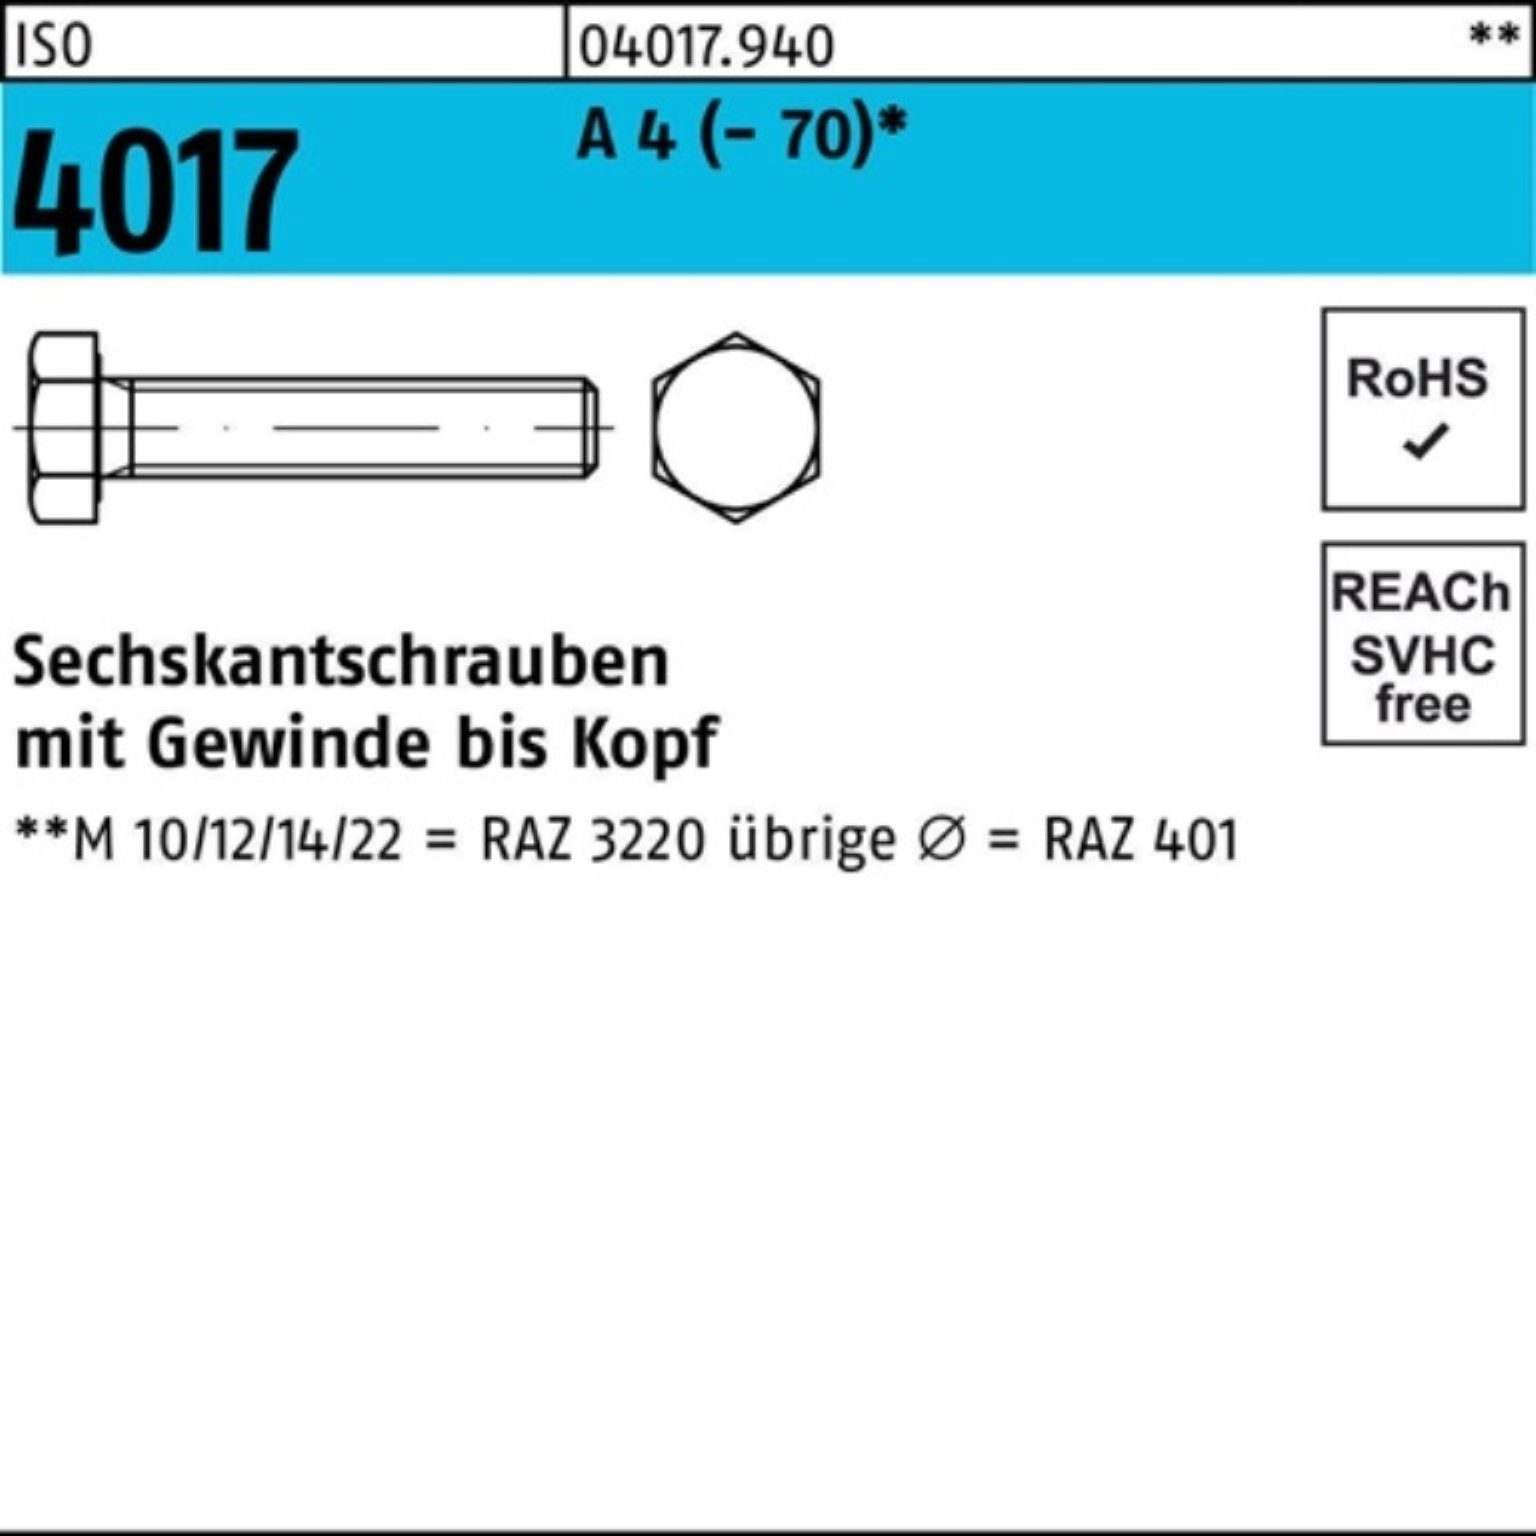 Bufab Sechskantschraube 100er Pack Sechskantschraube ISO 4017 VG M10x 170 A 4 (70) 1 Stück